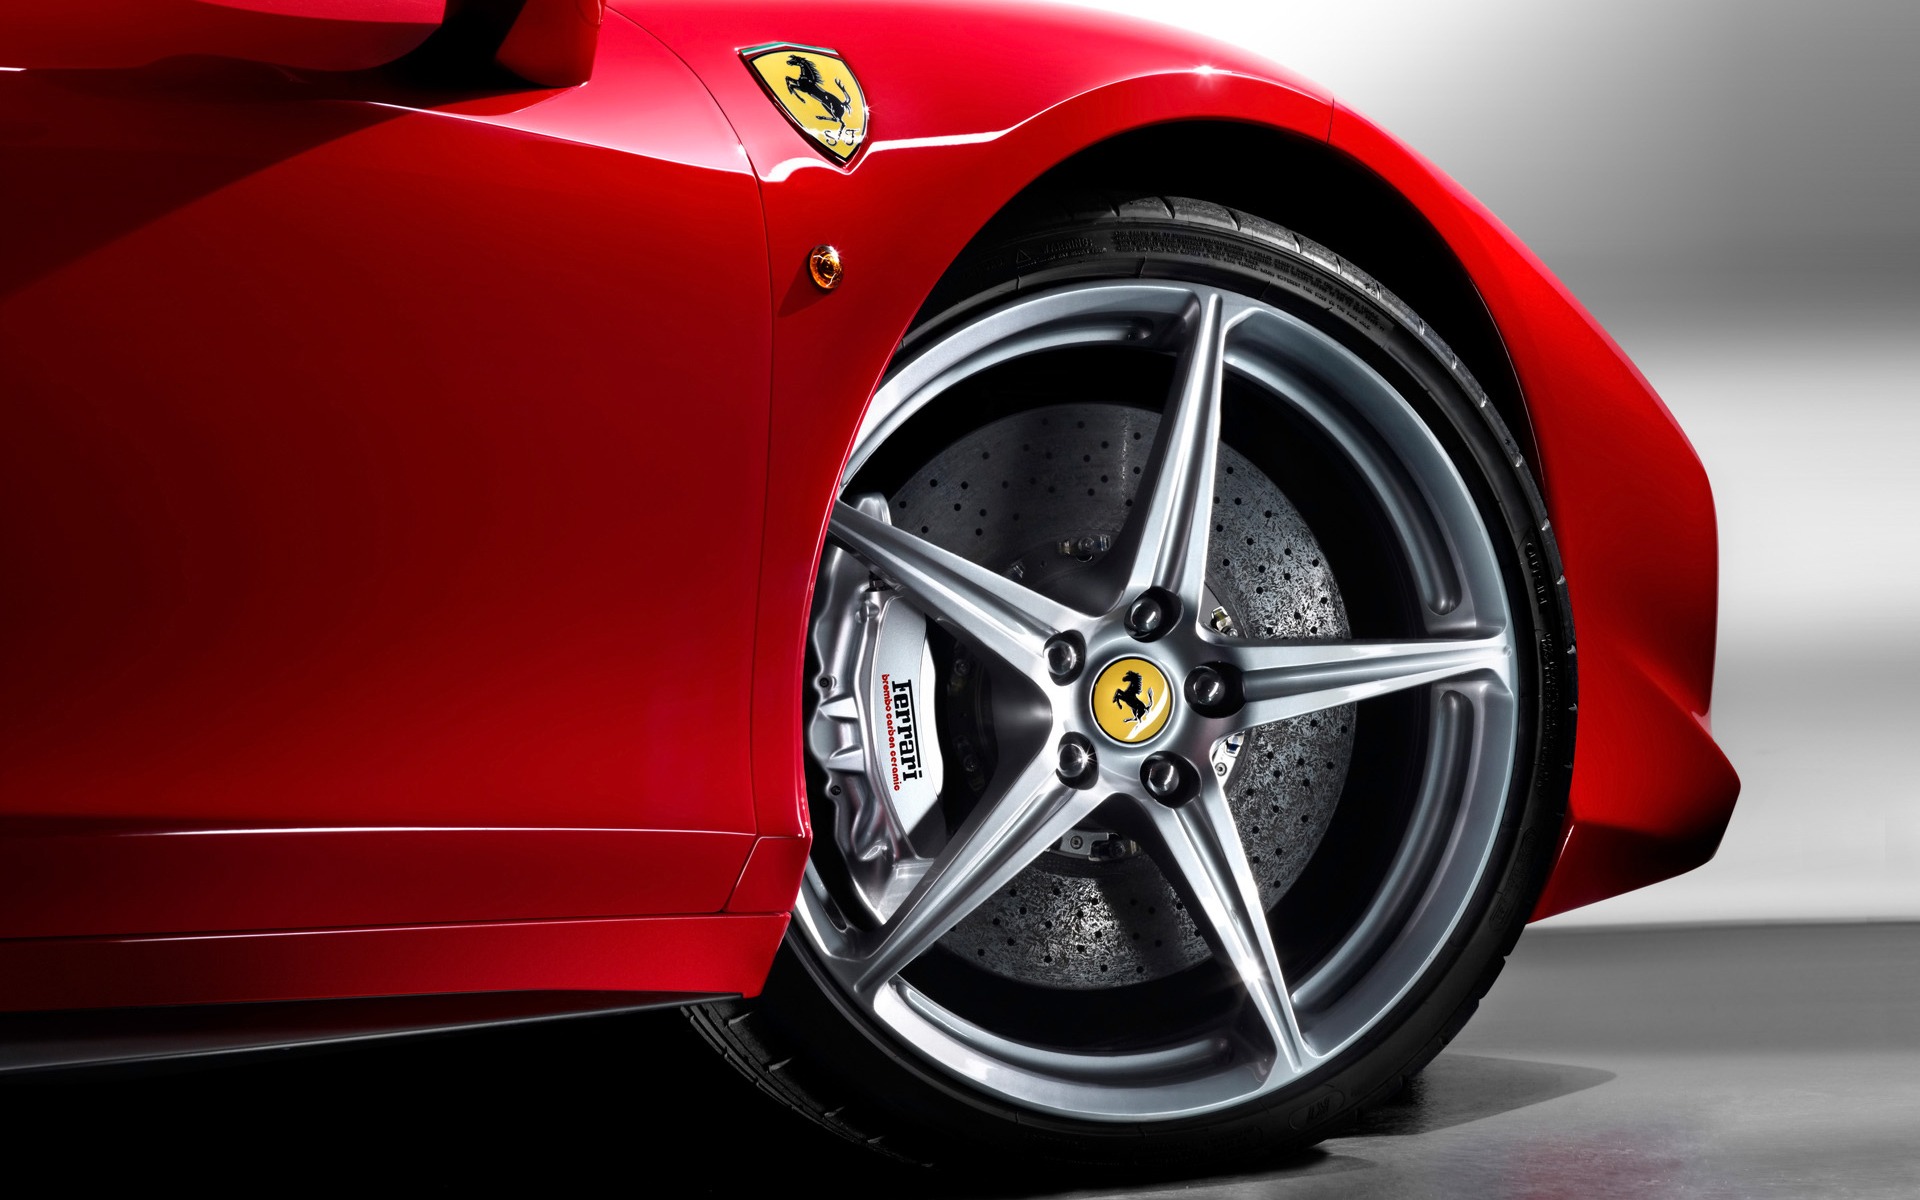 Ferrari Rims Wallpaper Cars In Jpg Format For